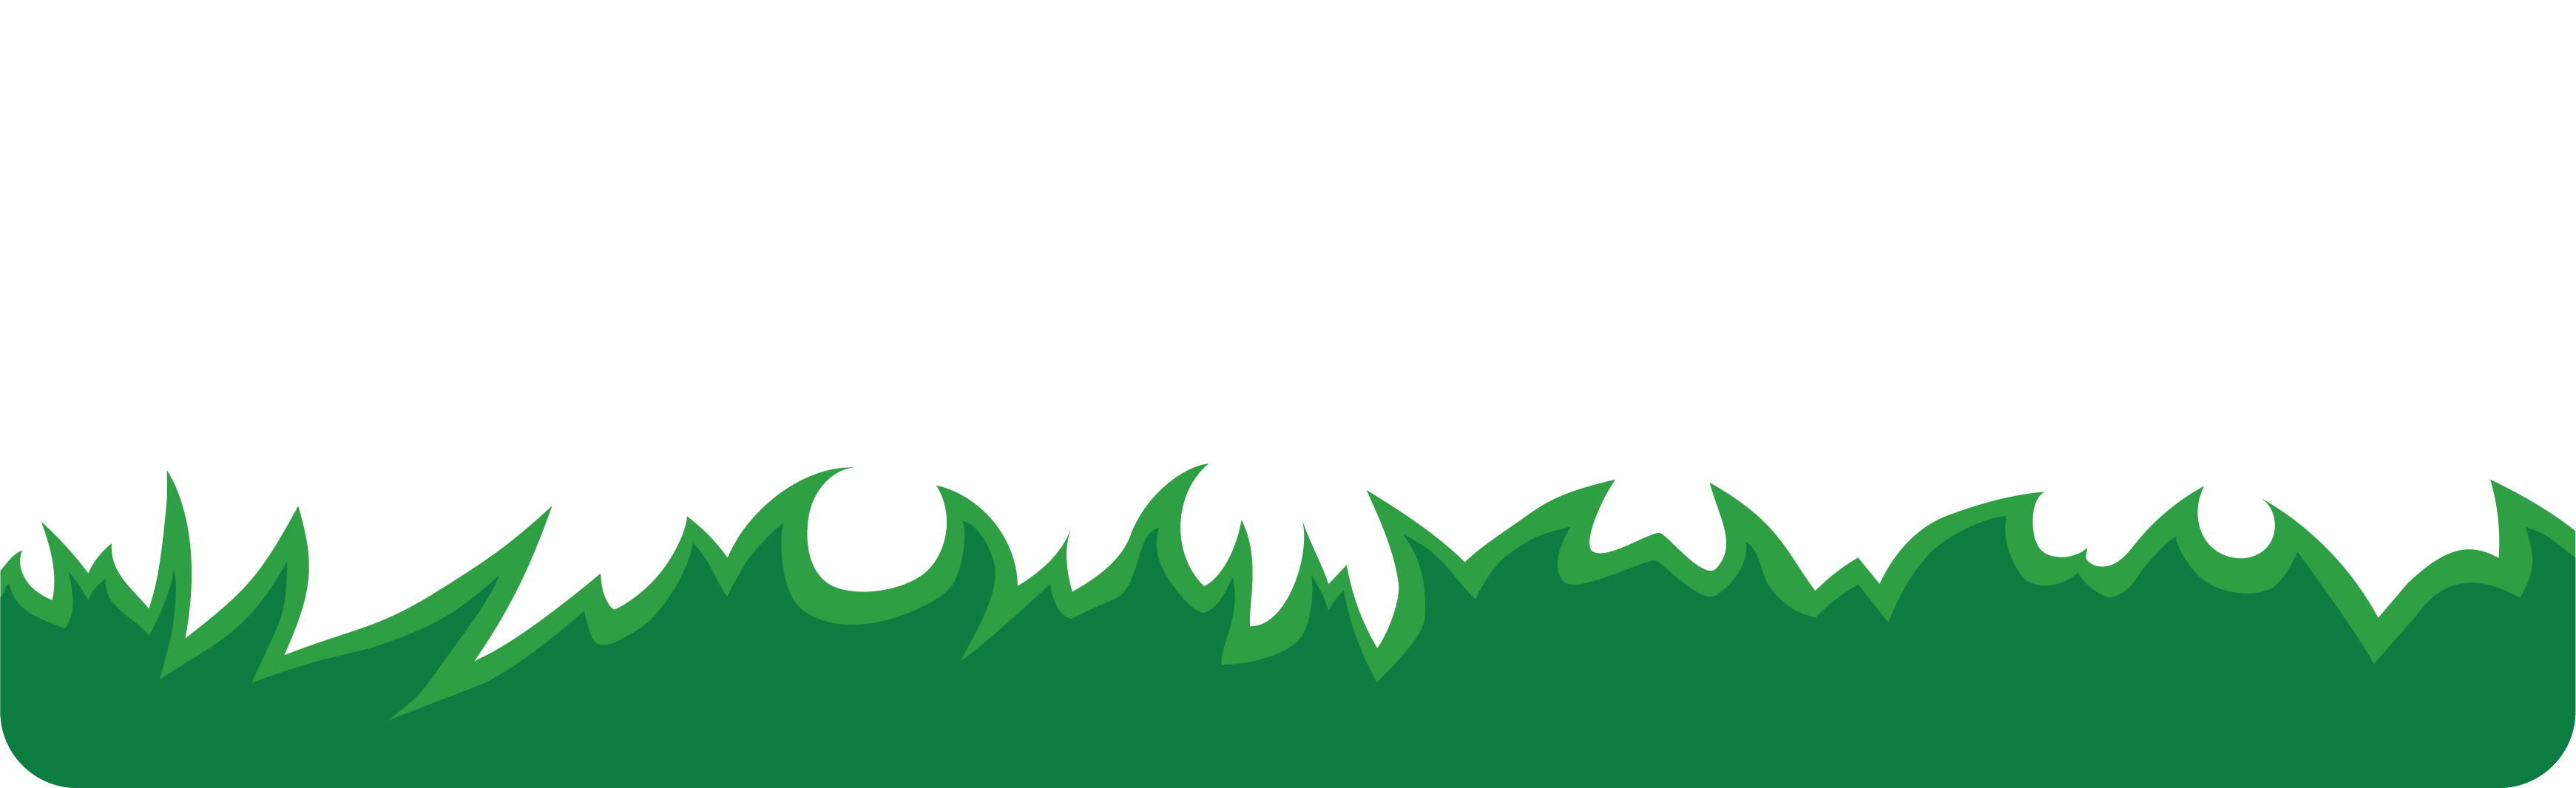 turftalk logo white